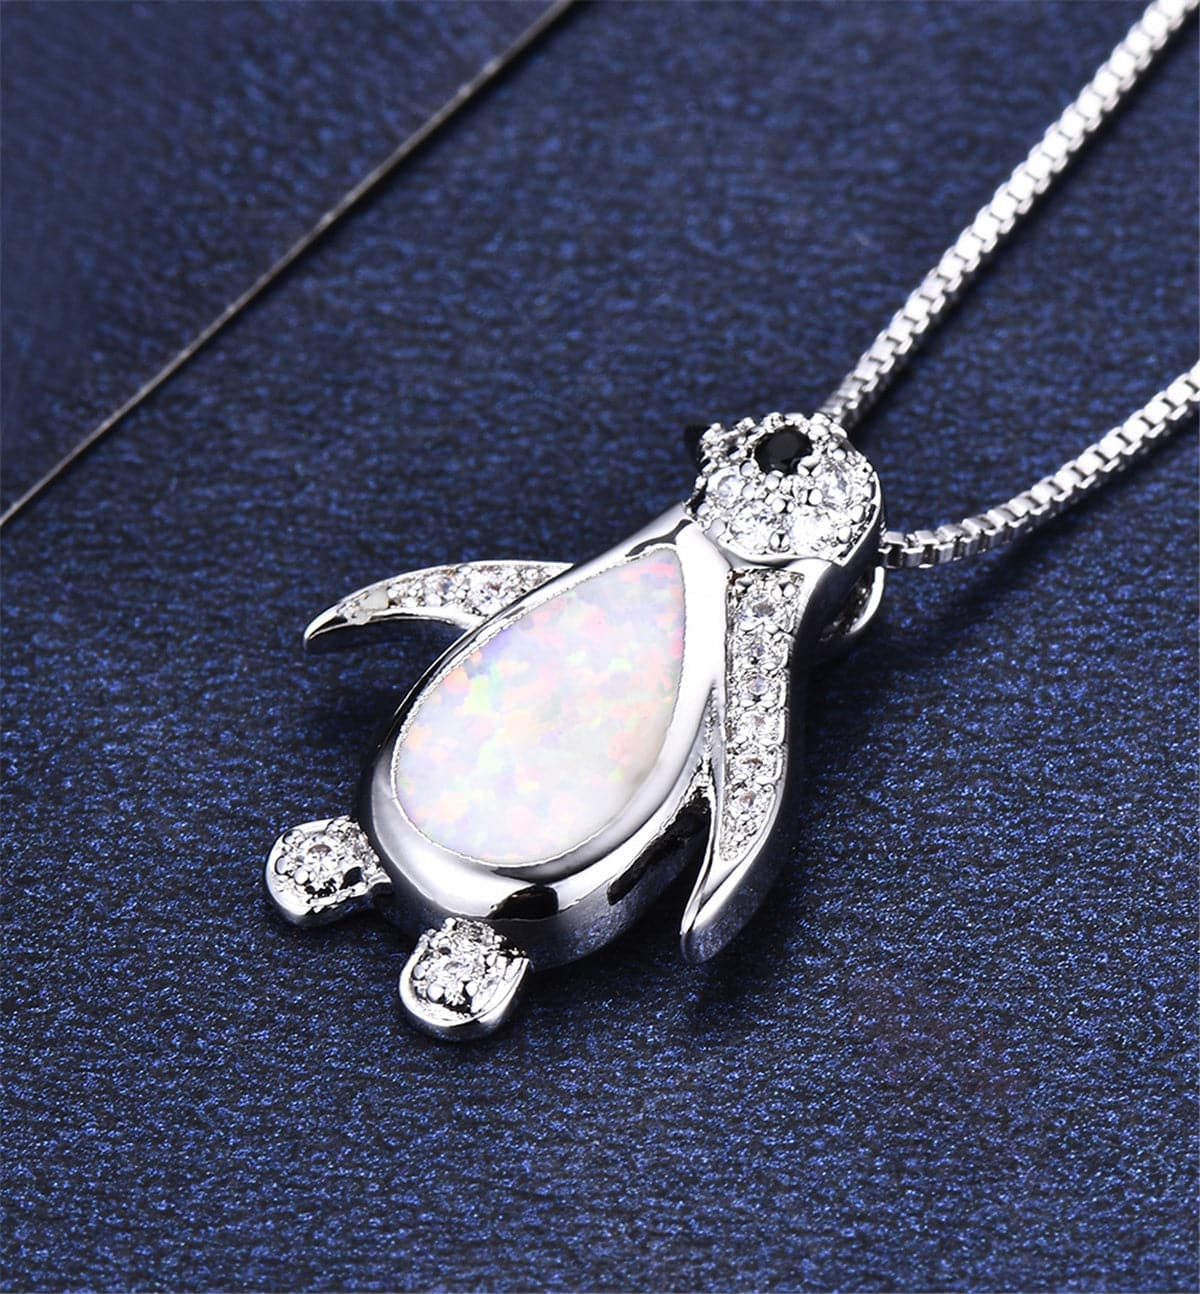 Opal & Cubic Zirconia Penguin Pendant Necklace